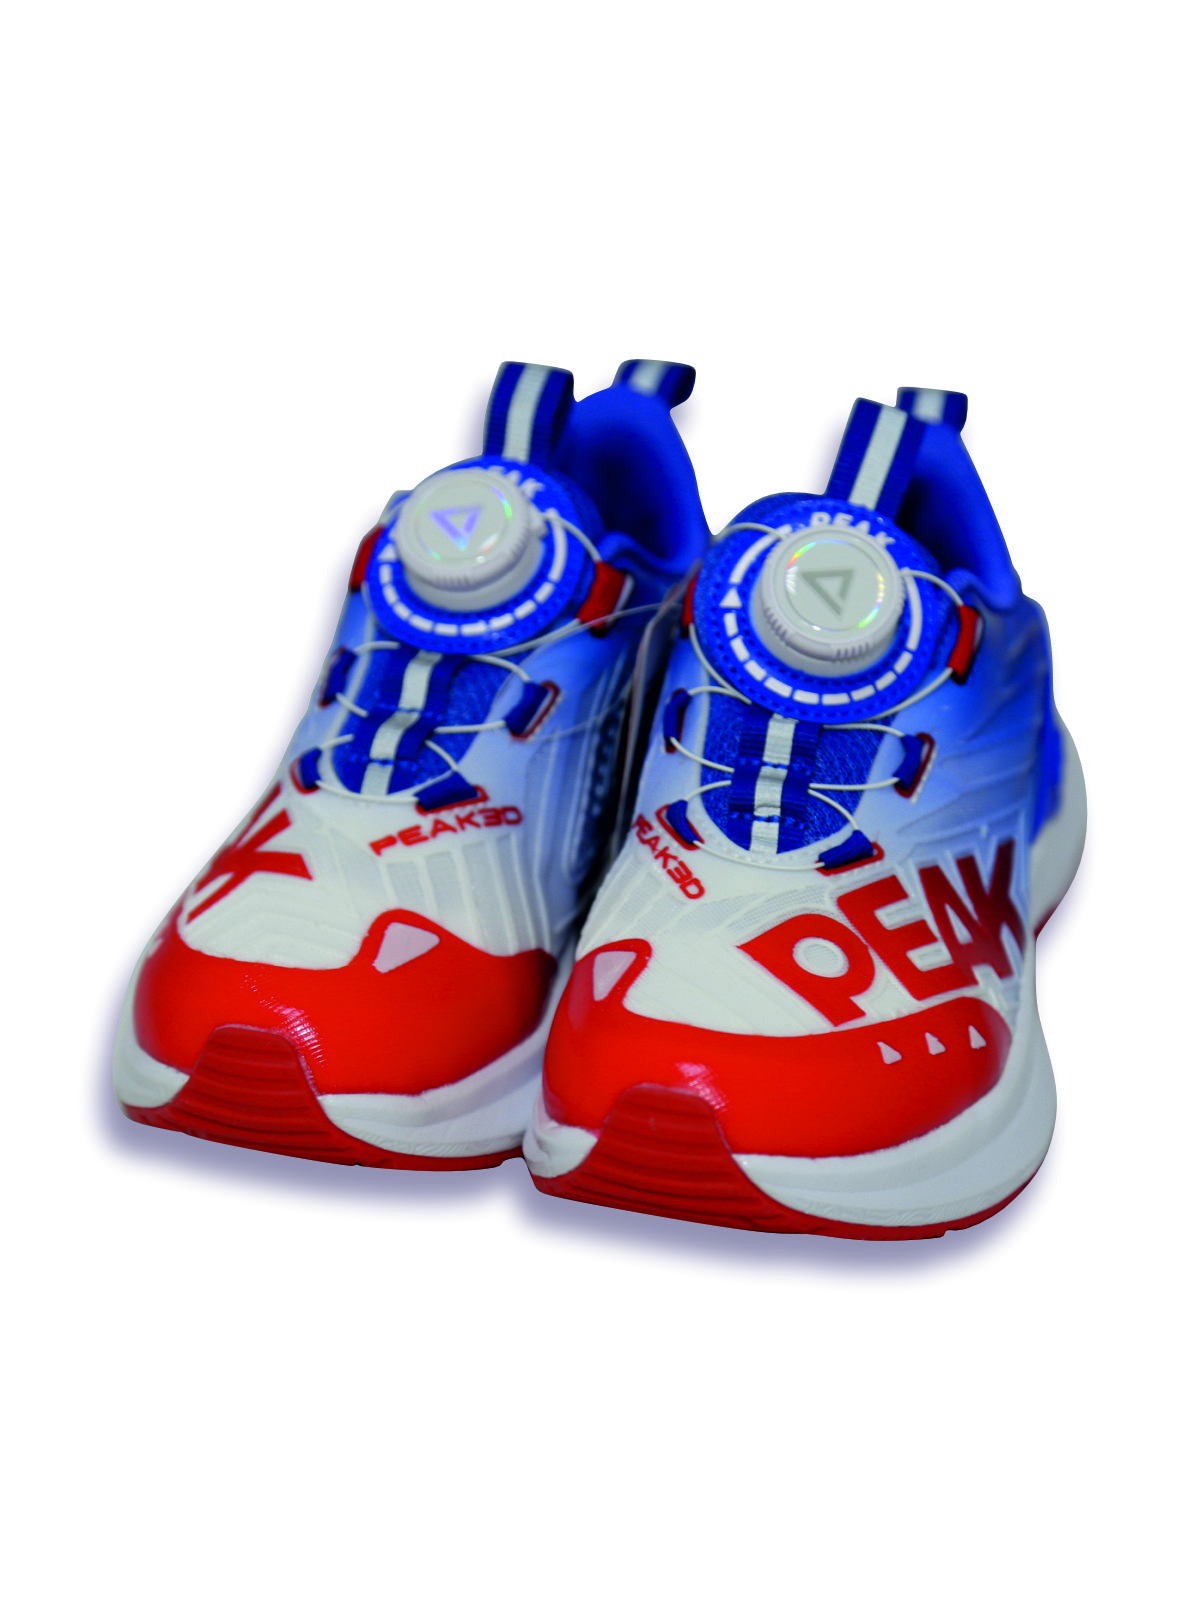 Кроссовки детские PEAK E23, красно-сине-белый, 36 кроссовки детские peak e23 красно сине белый 35